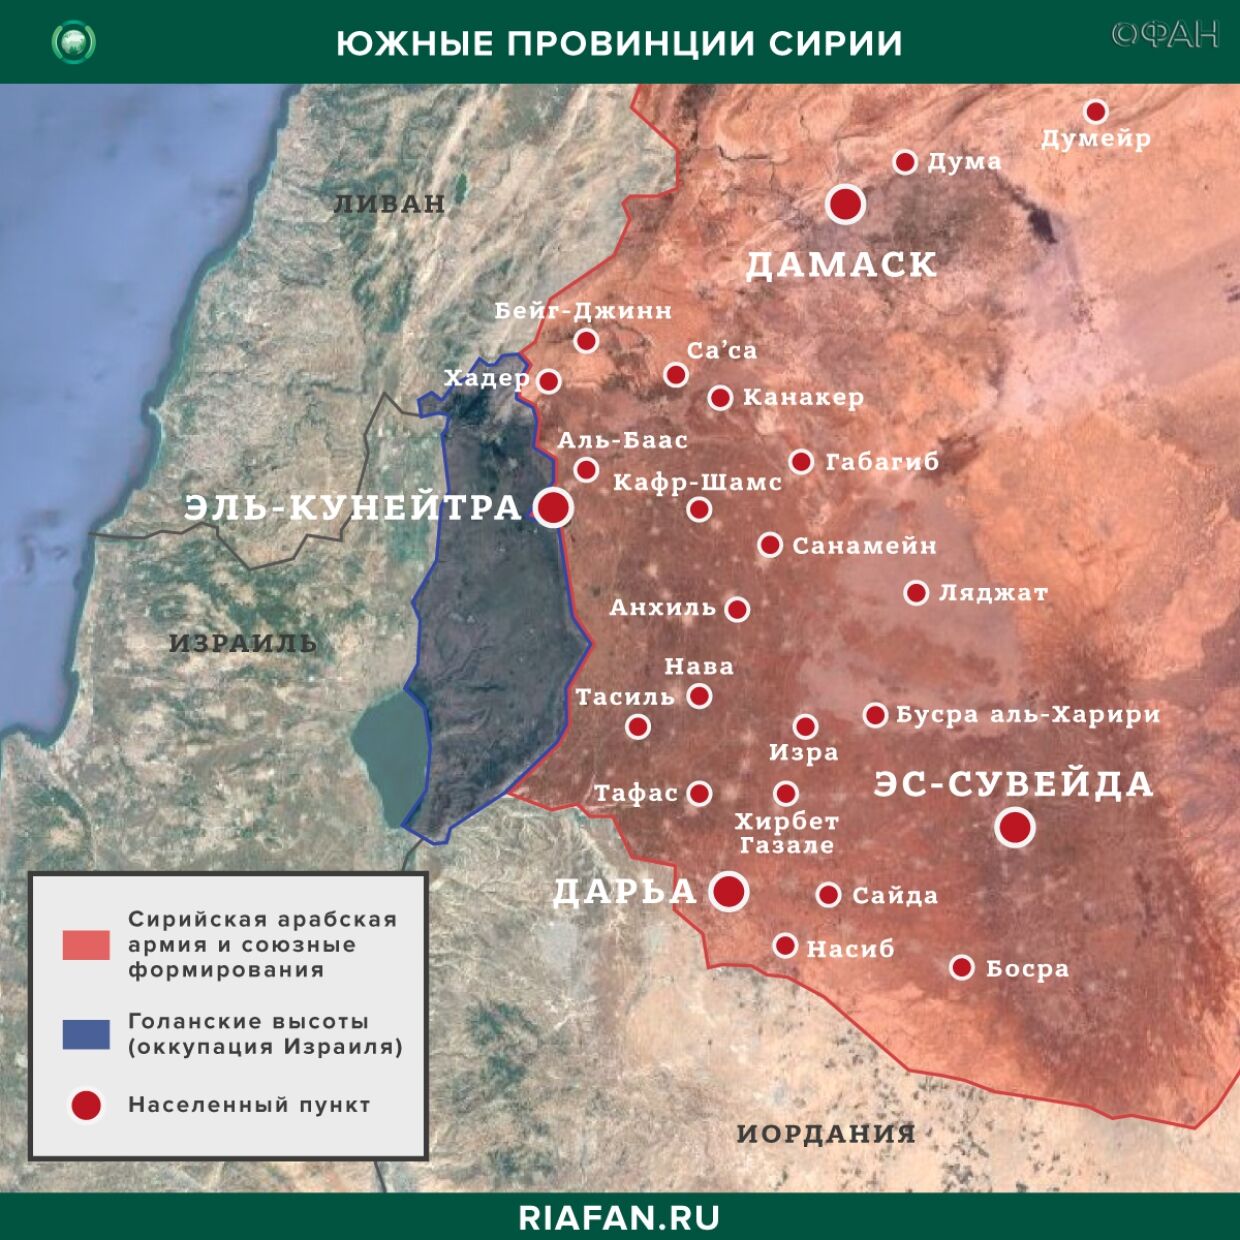 Resultados diarios de Siria para 17 Abril 06.00: ИГ* совершило две вылазки в Даръа, взрыв в Хасаке убил пять боевиков